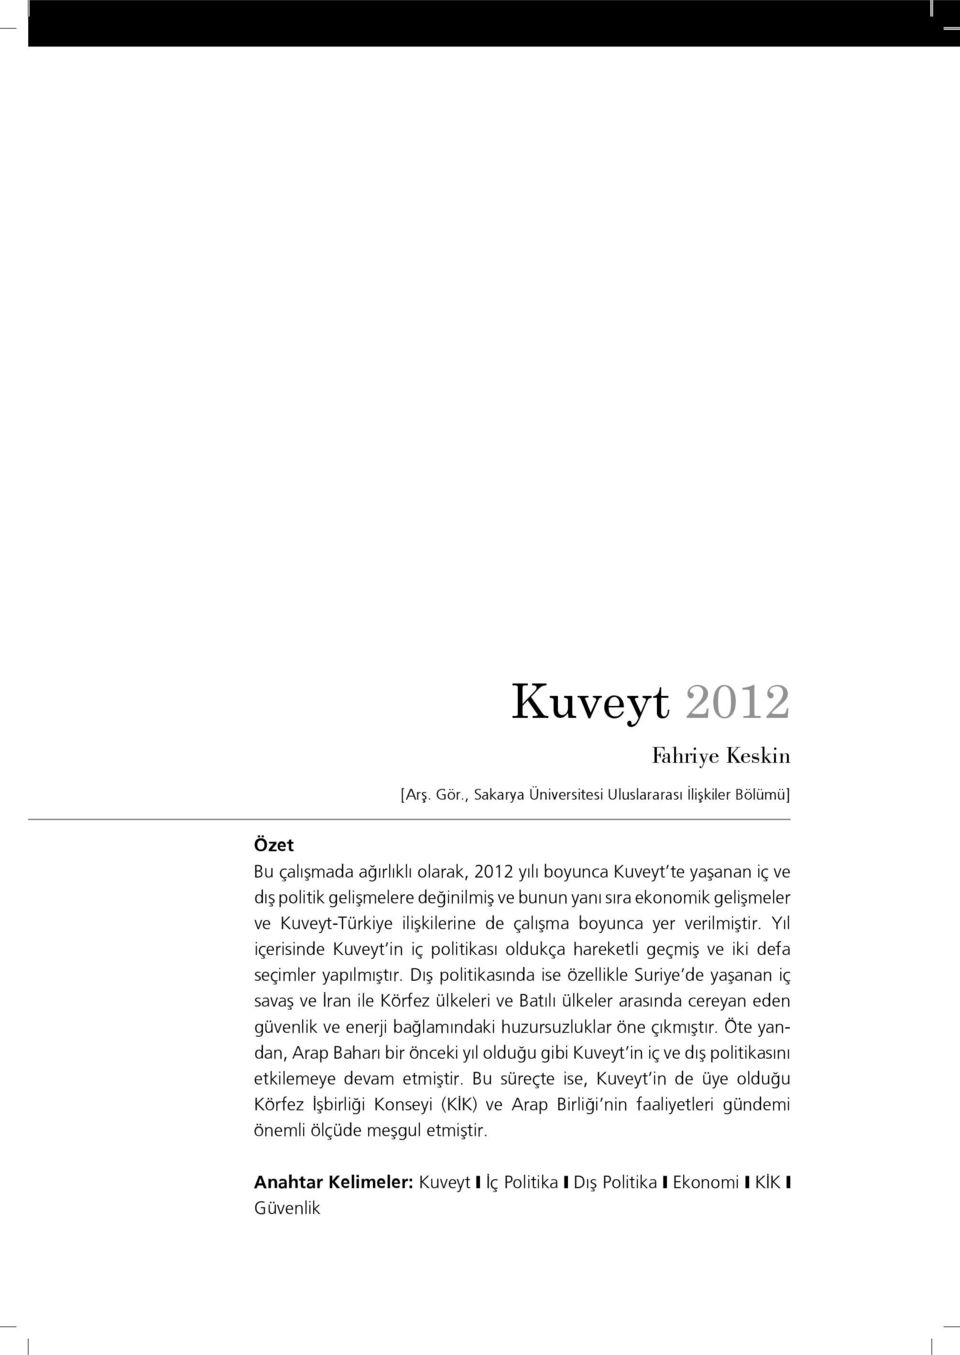 gelişmeler ve Kuveyt-Türkiye ilişkilerine de çalışma boyunca yer verilmiştir. Yıl içerisinde Kuveyt in iç politikası oldukça hareketli geçmiş ve iki defa seçimler yapılmıştır.